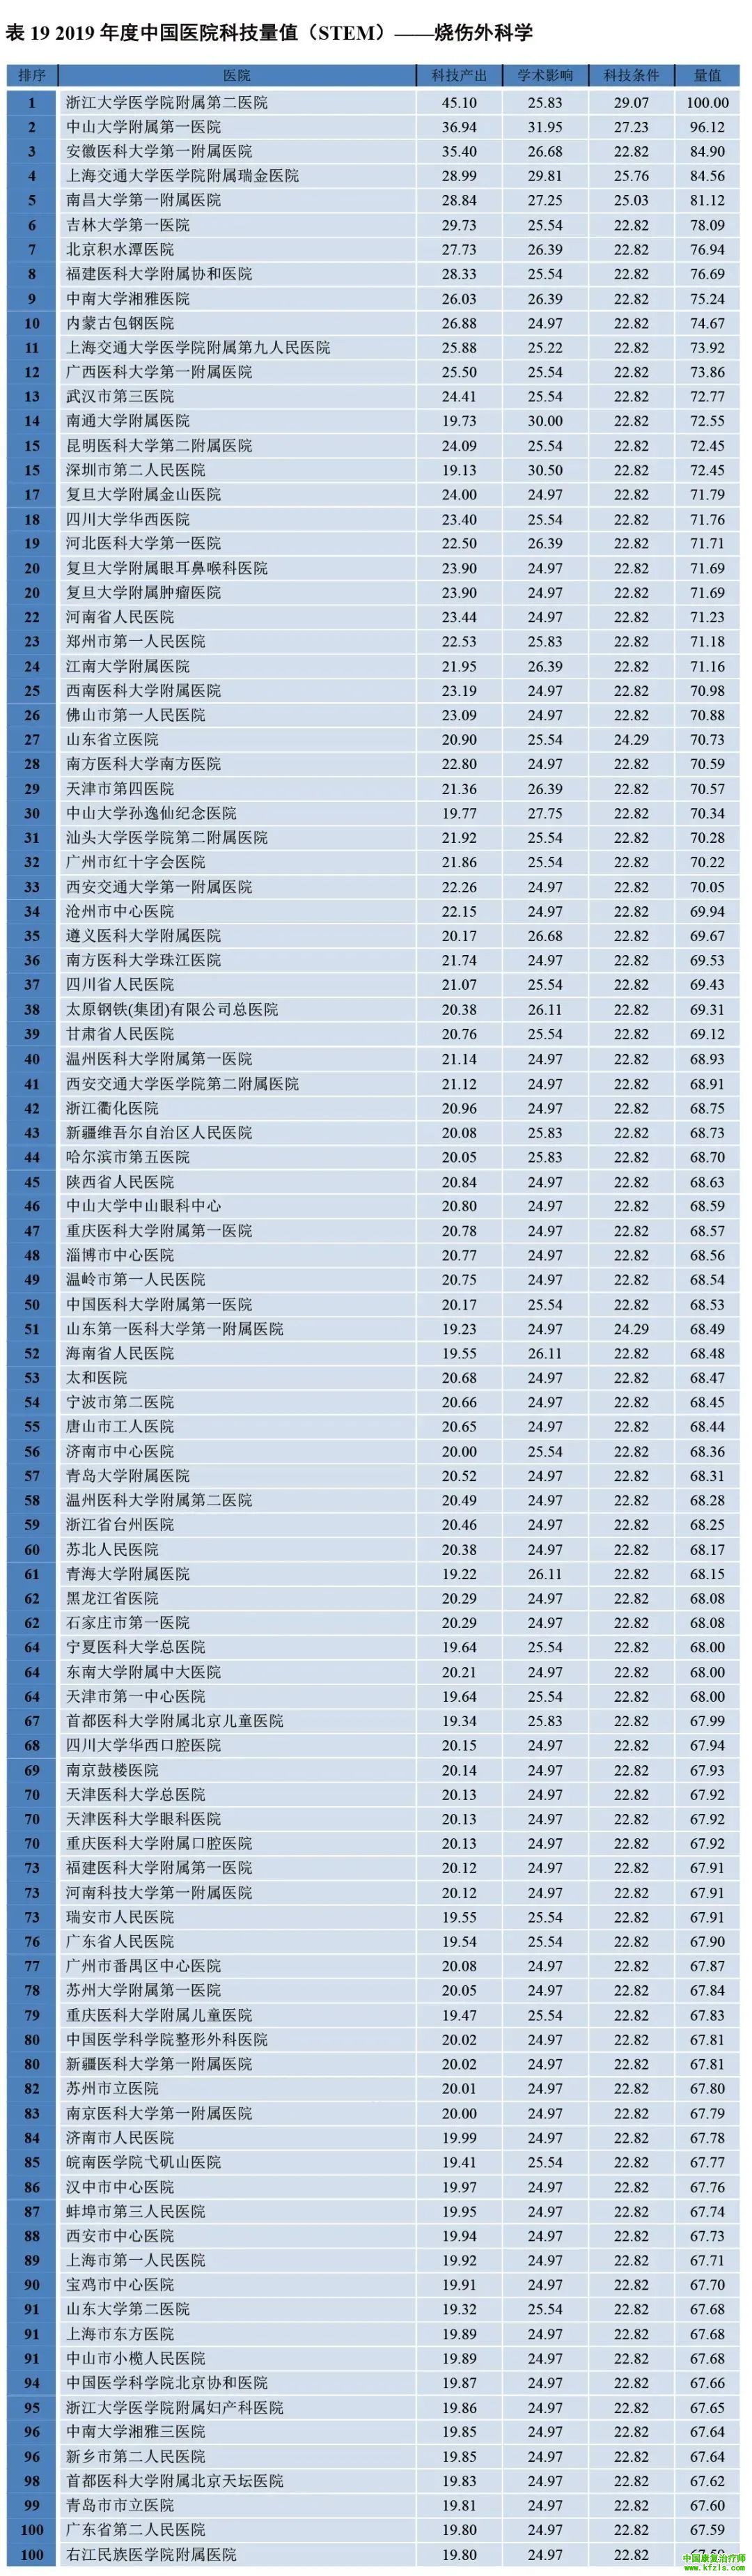 2019年度中国医院科技量值（STEM）综合排名